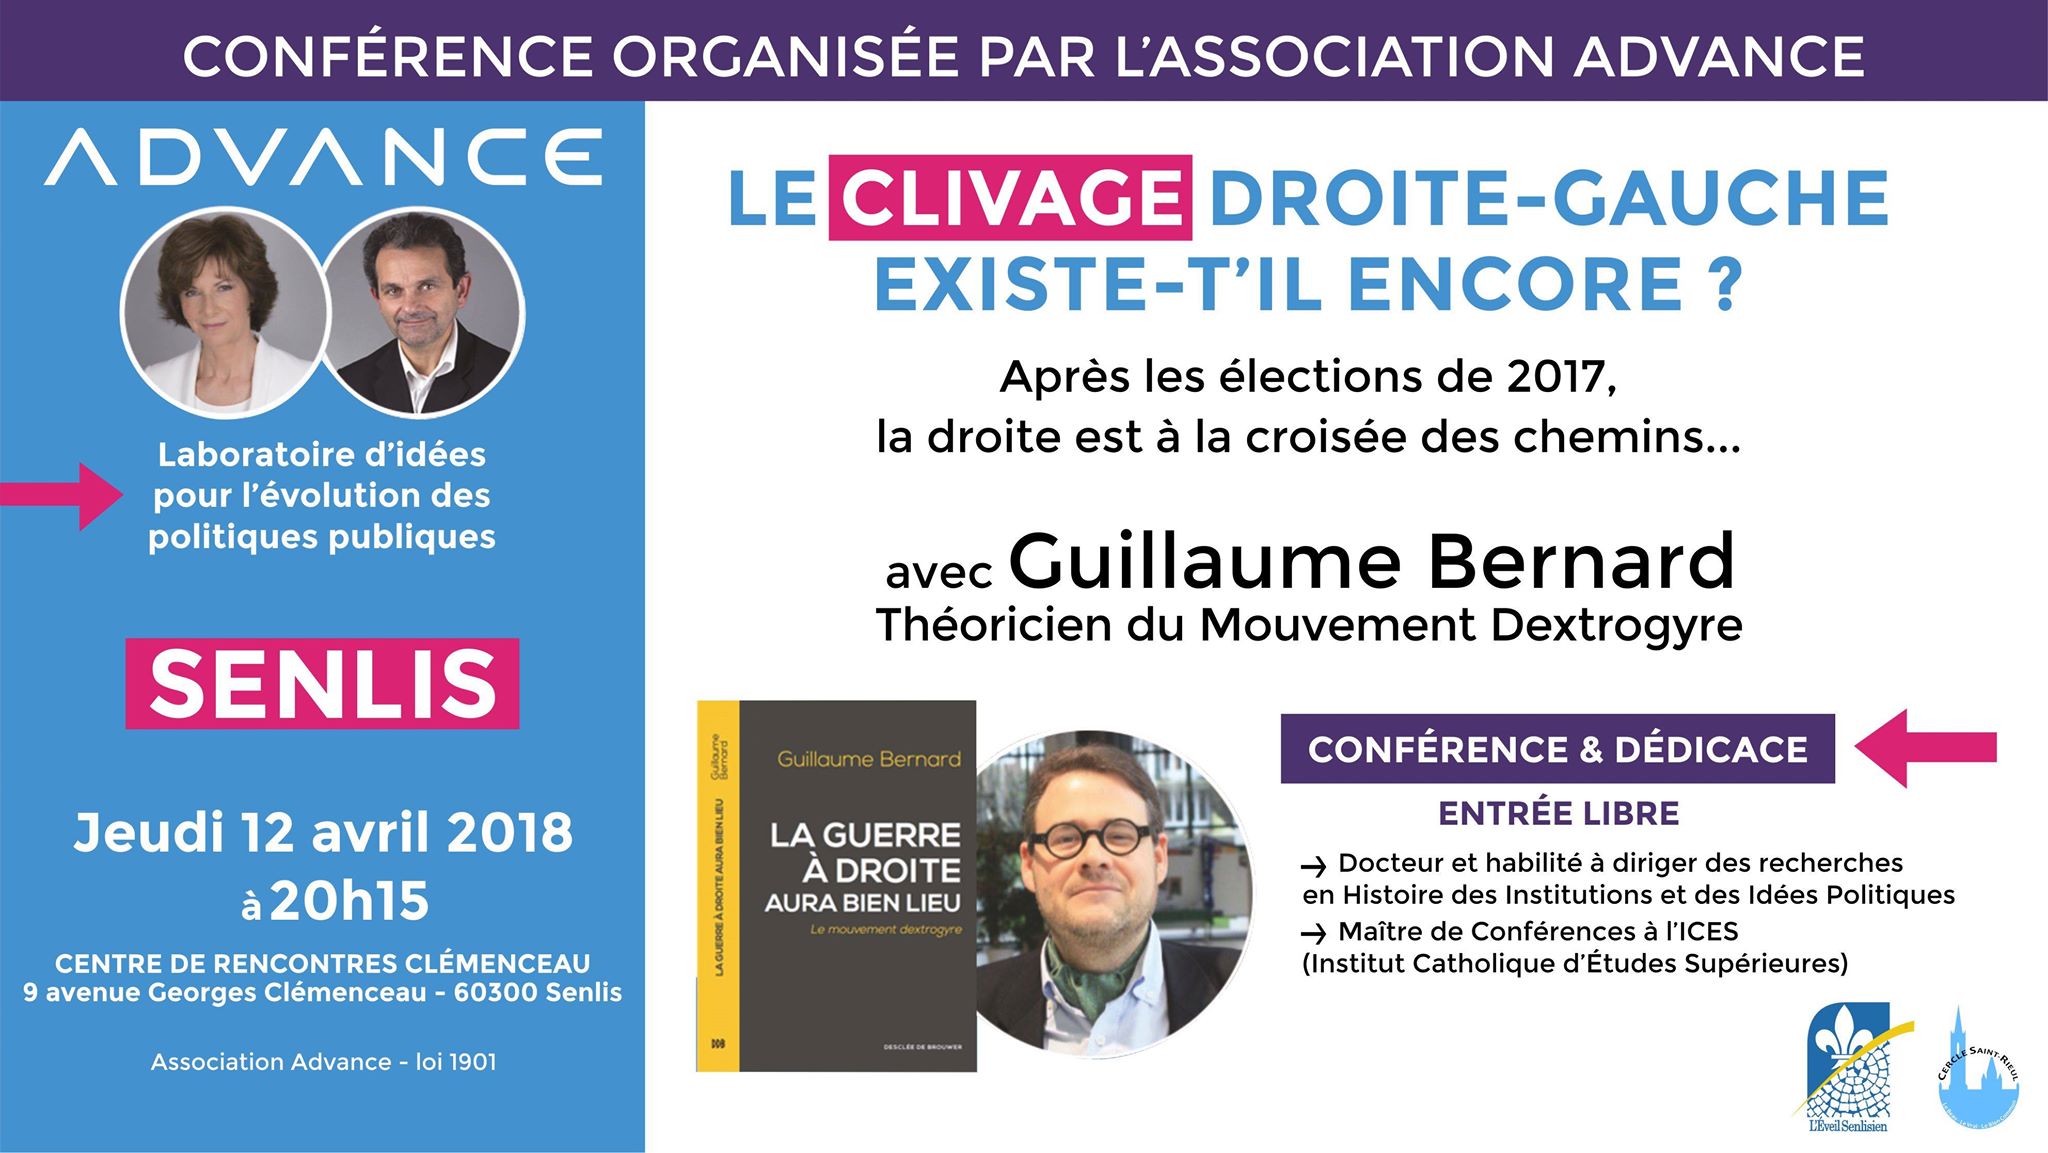 Conférence : “Le clivage droite-gauche existe-t-il encore ?” avec Guillaume Bernard le 12 avril 2018 à Senlis (60)